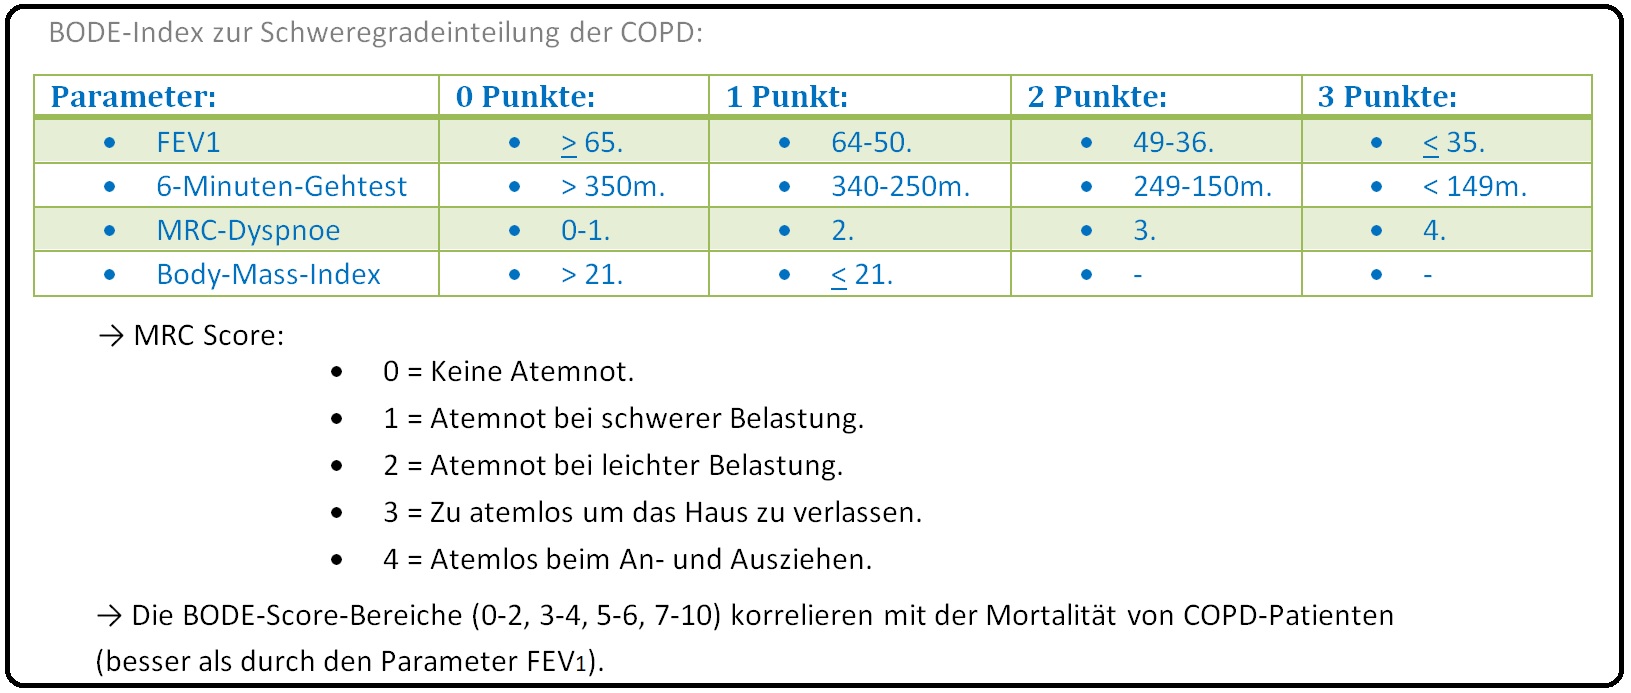 1010 BODE Index zur Schweregradeinteilung der COPD